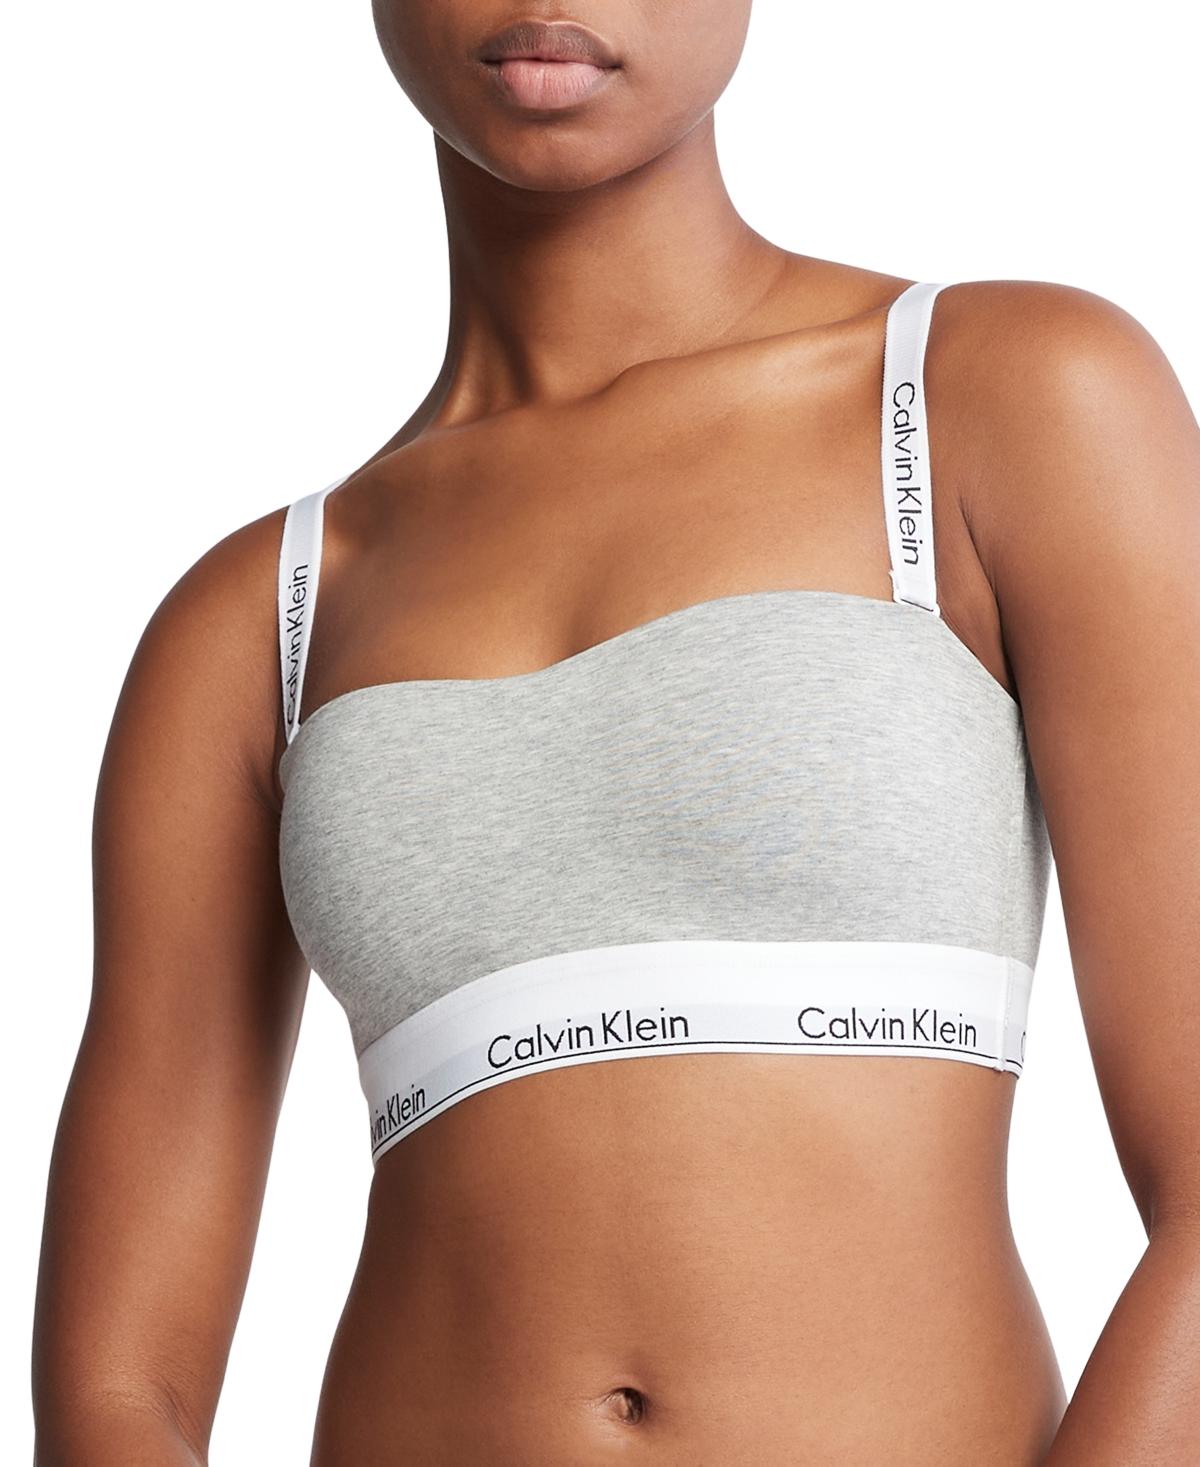 Calvin Klein Comfort Cotton Unlined Bralette QF6576